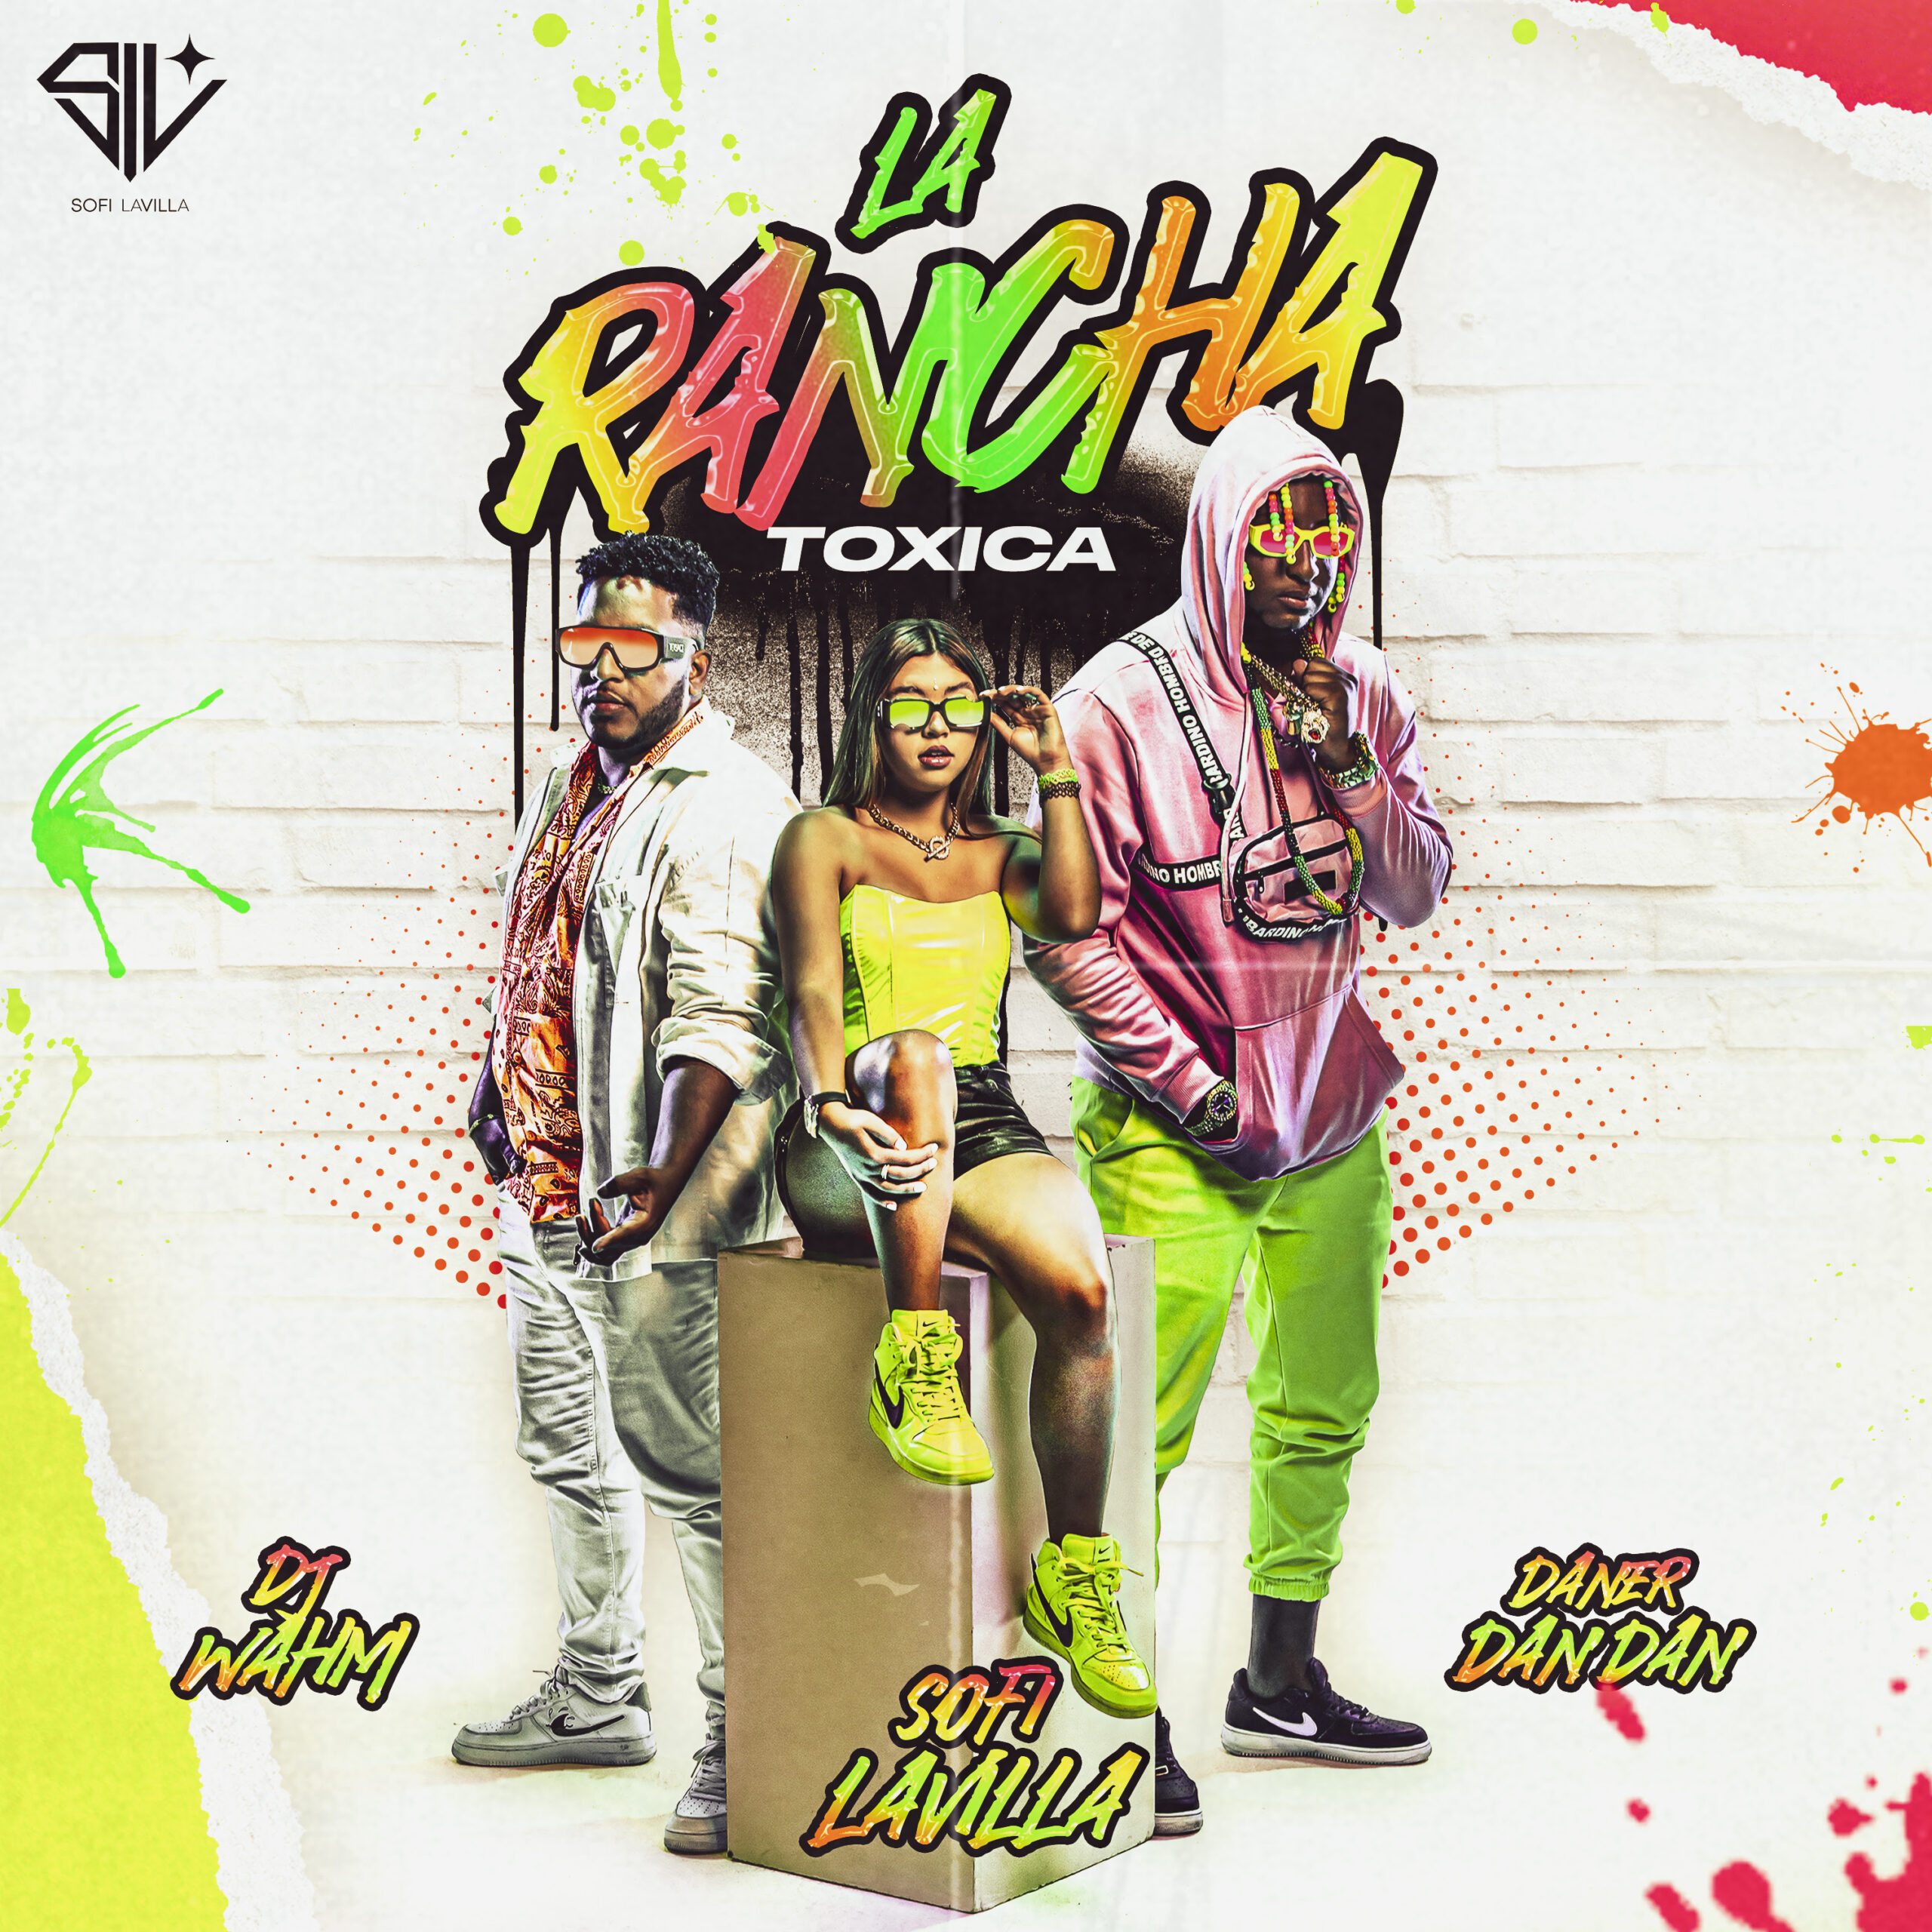 ¡Innovando en su estilo musical! Así es como Sofi LaVilla presenta su nuevo sencillo «La Rancha» junto a Daner Dan Dan y Dj Wahm